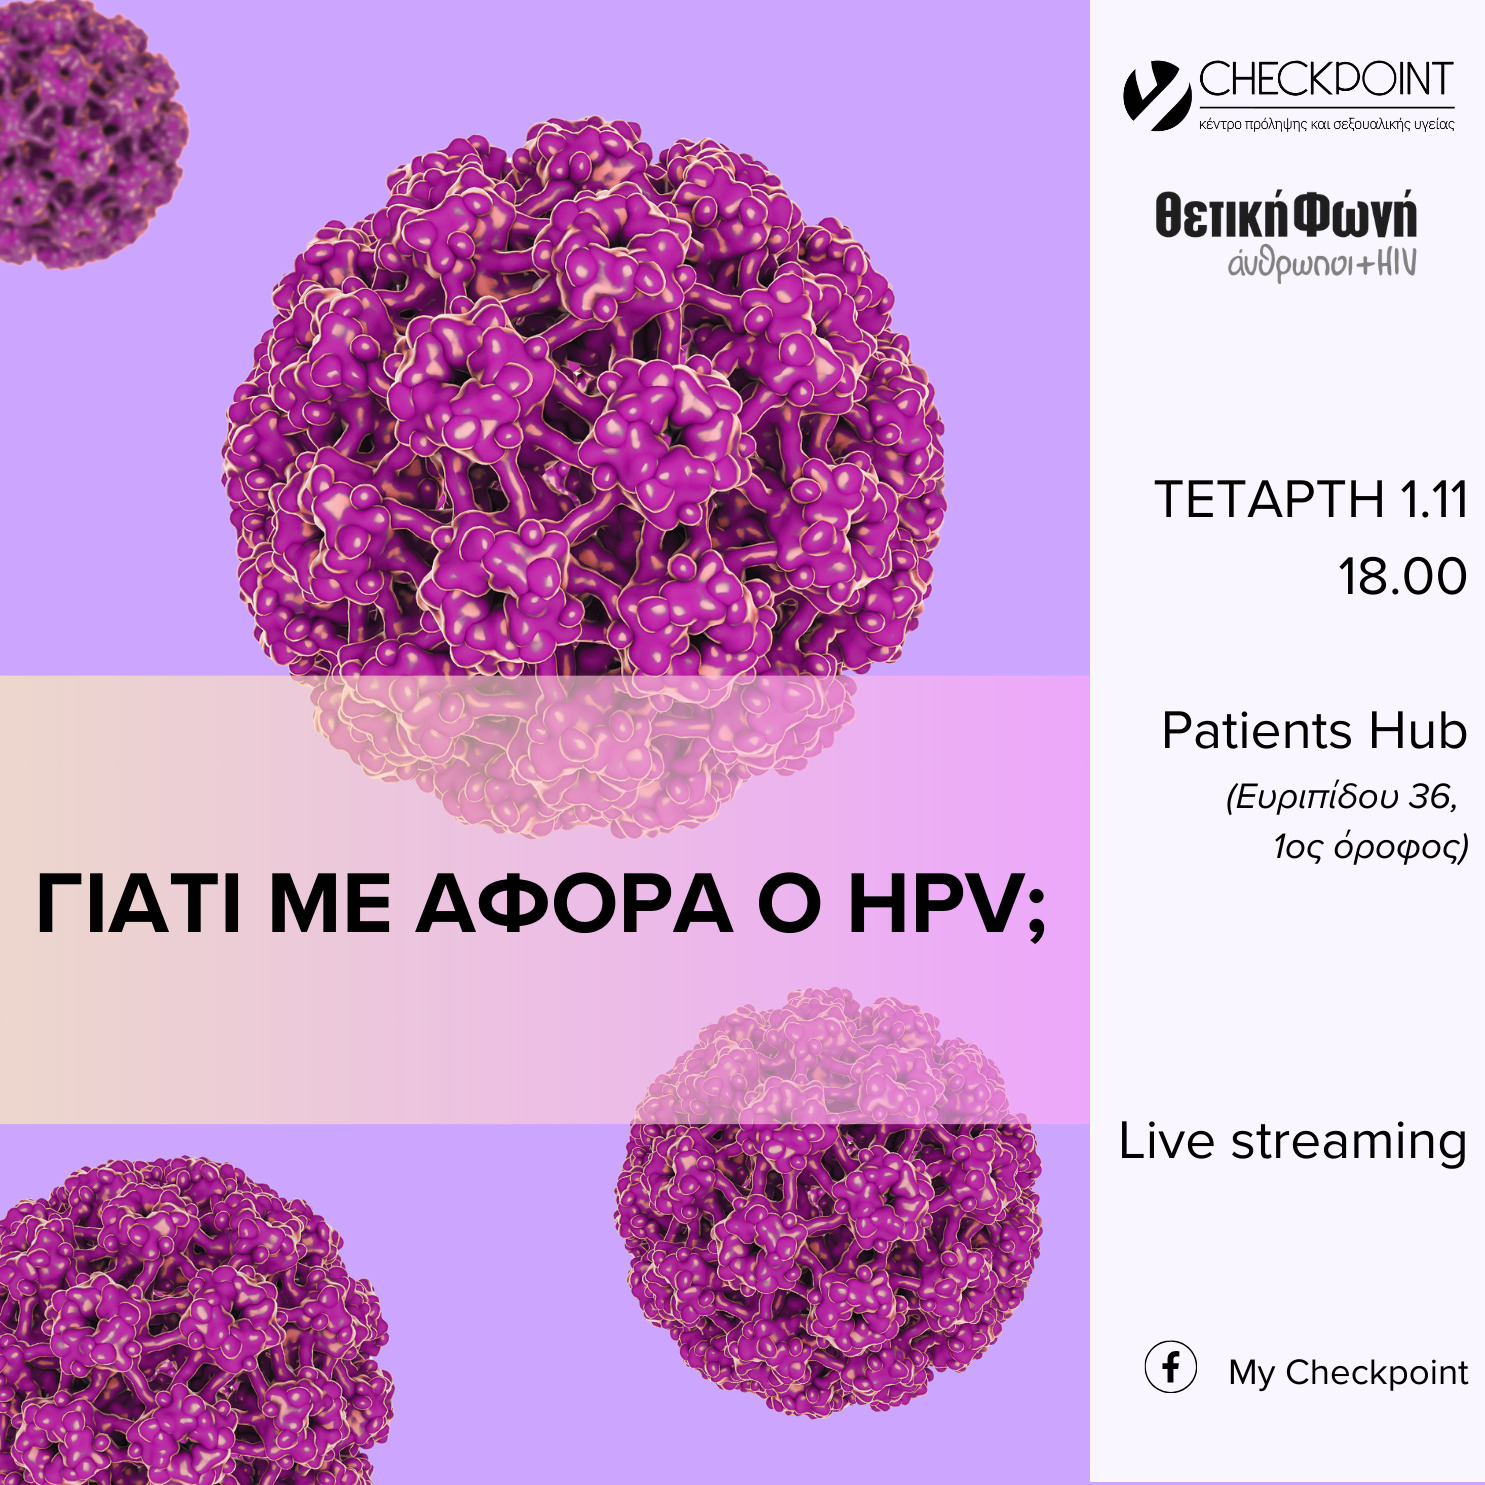 Εικόνα για το άρθρο “Γιατί με αφορά ο HPV; | Τετάρτη 1η Νοεμβρίου, 18.00”